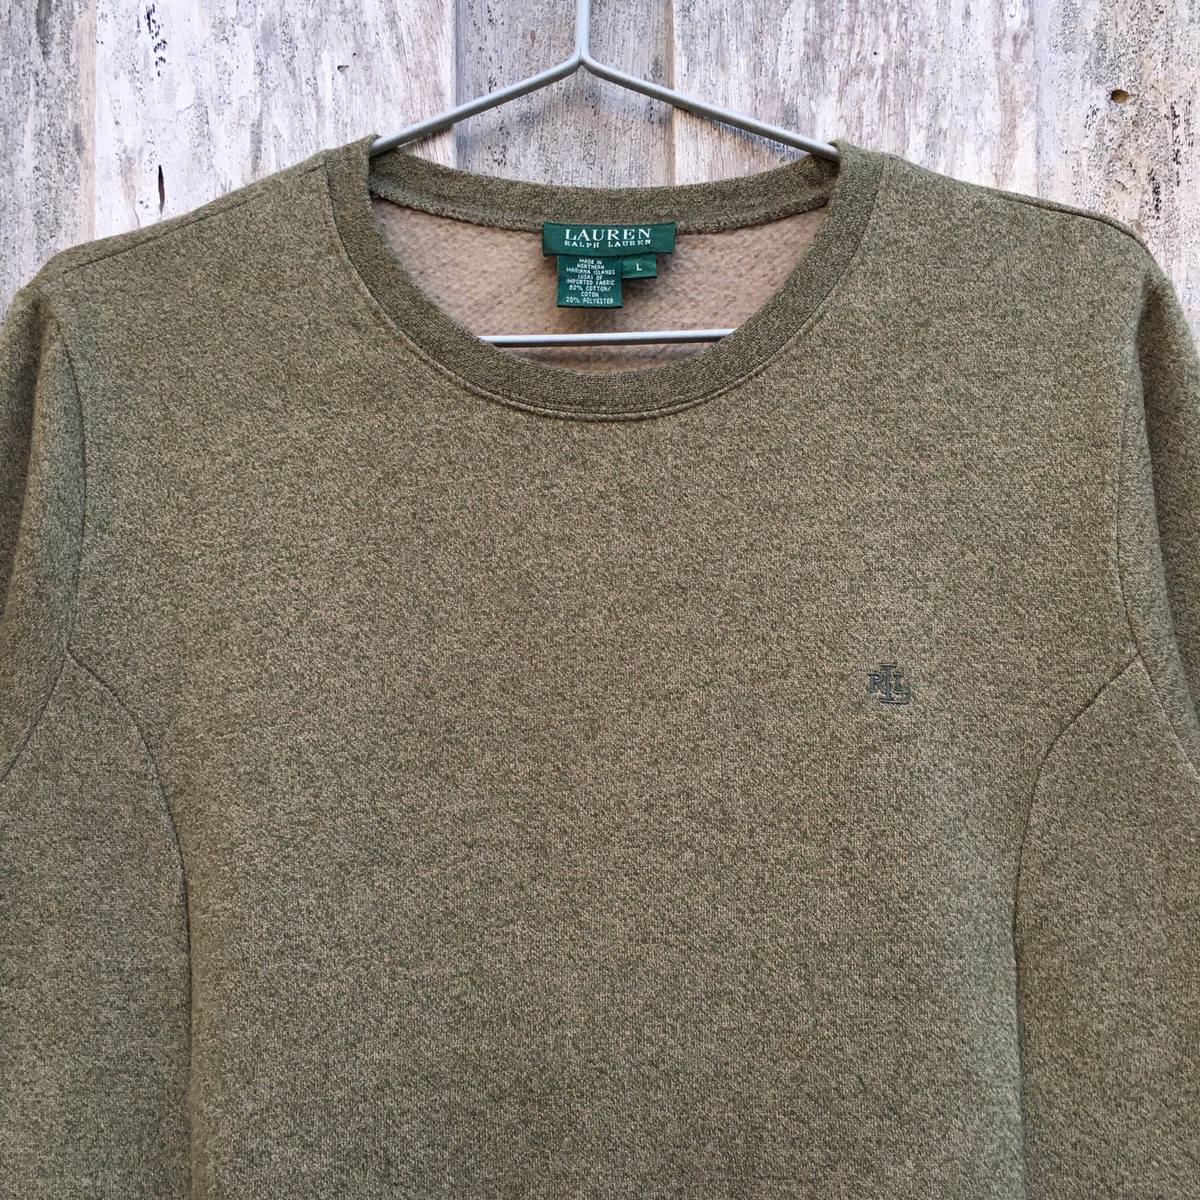 Vintage Ralph Lauren Crewneck Sweatshirt - 2